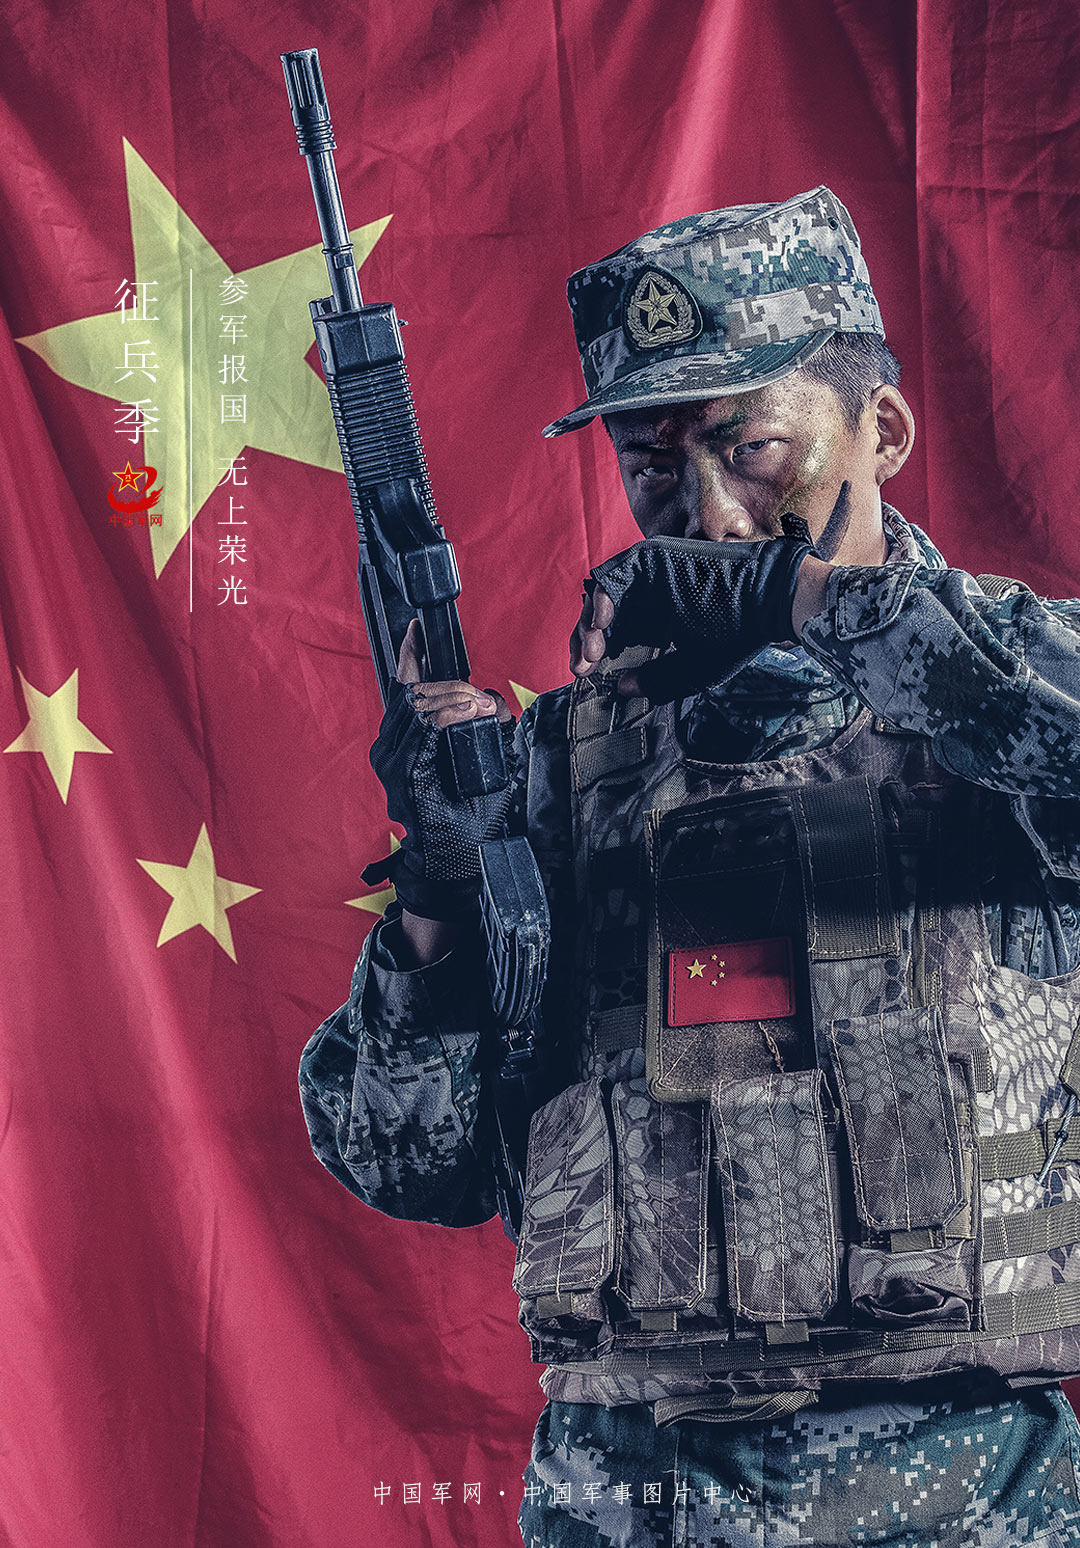 武警海南总队开展实战化军事训练提升打赢本领 - 中国军网